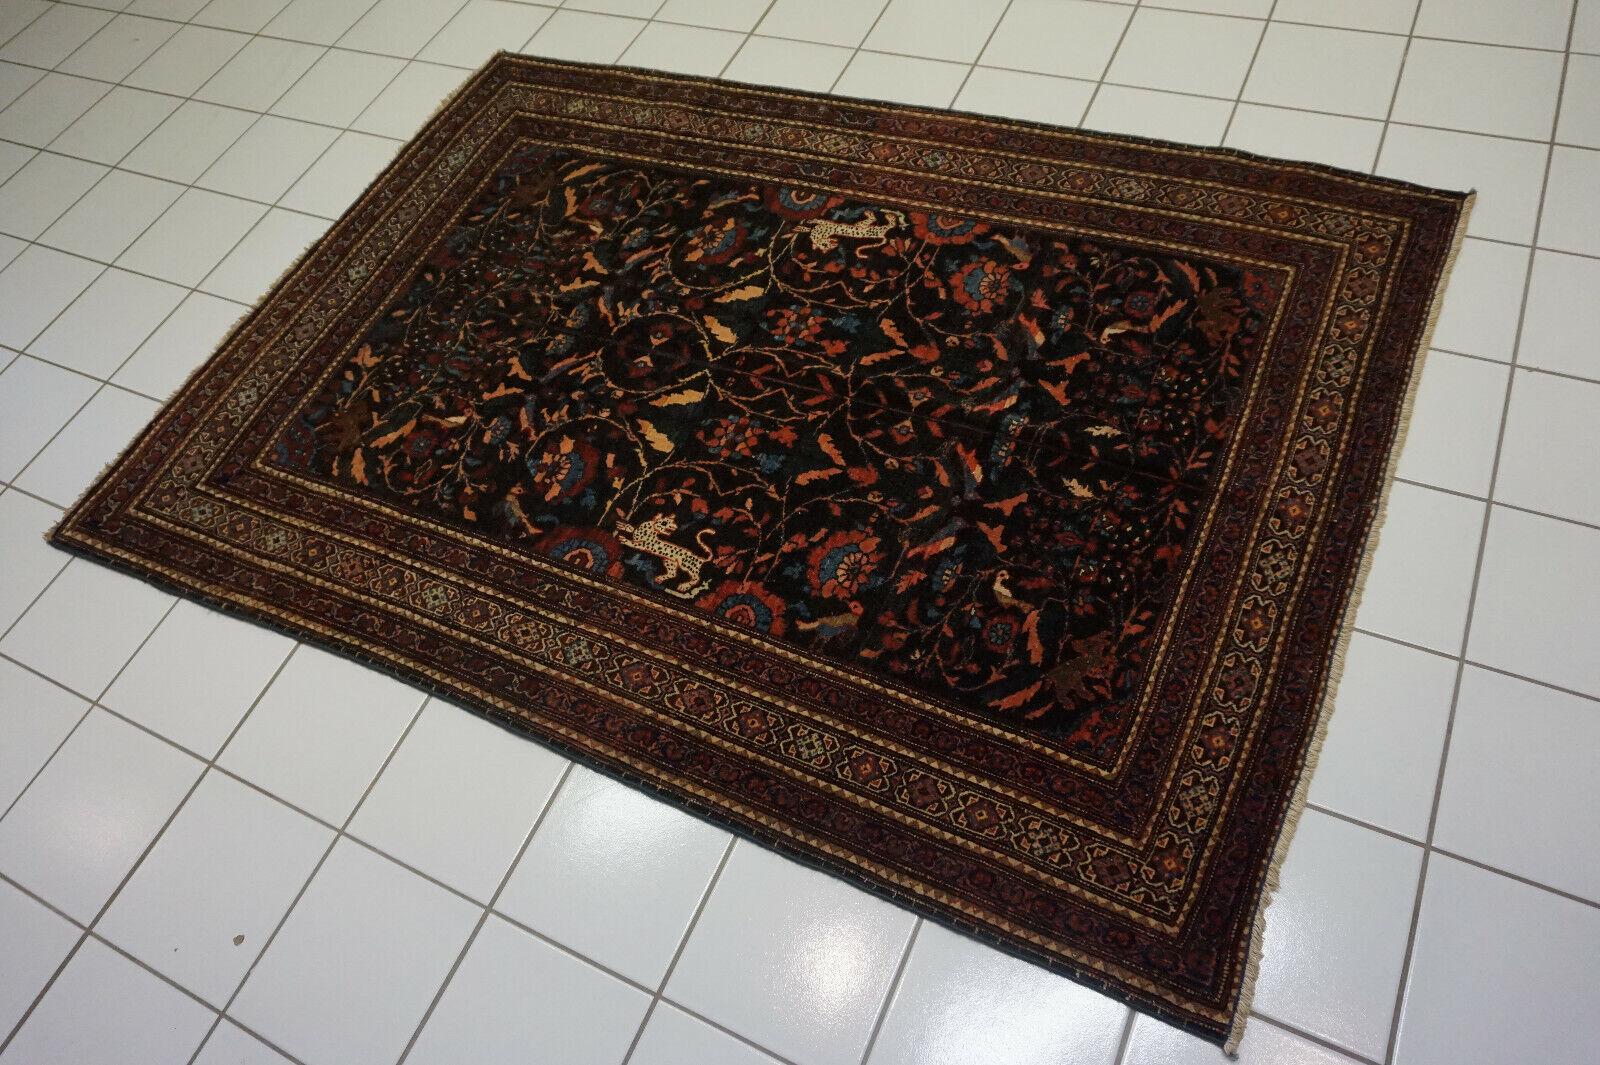 Handgefertigter antiker persischer Teheran-Teppich: Ein Schatz aus der Vergangenheit, dieser exquisite Teppich trägt das Geflüster der Geschichte und die Kunstfertigkeit seiner Schöpfer. Lasst uns seine Geschichte enträtseln:

Produkt Beschreibung: